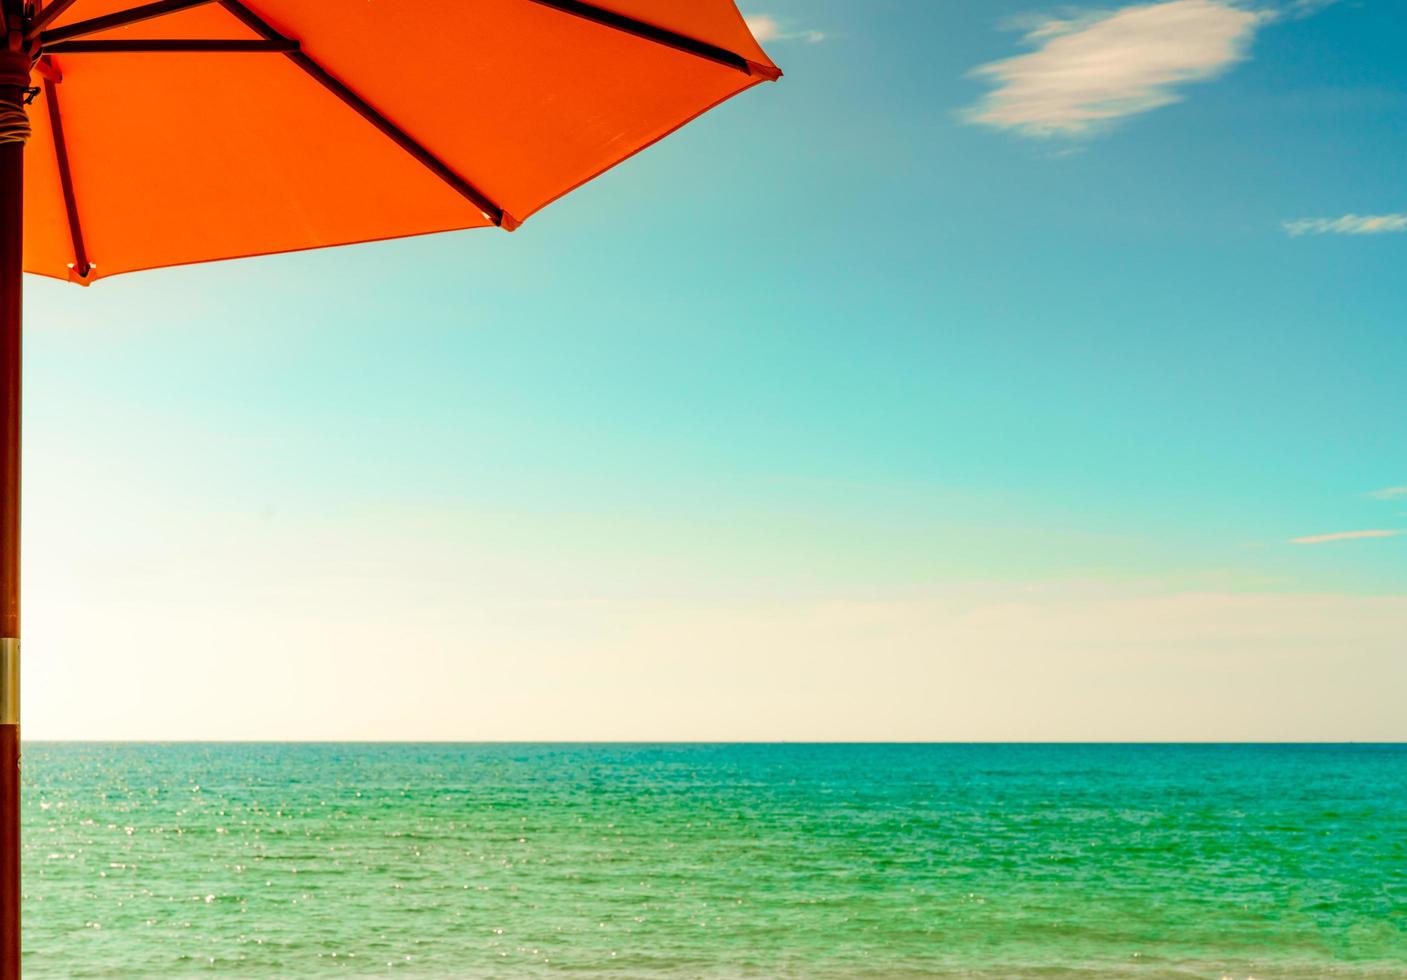 guarda-sol laranja na praia de areia dourada à beira-mar com água do mar verde esmeralda e céu azul e nuvens brancas. férias de verão no conceito de praia paraíso tropical. horizonte entre o mar e o céu. foto